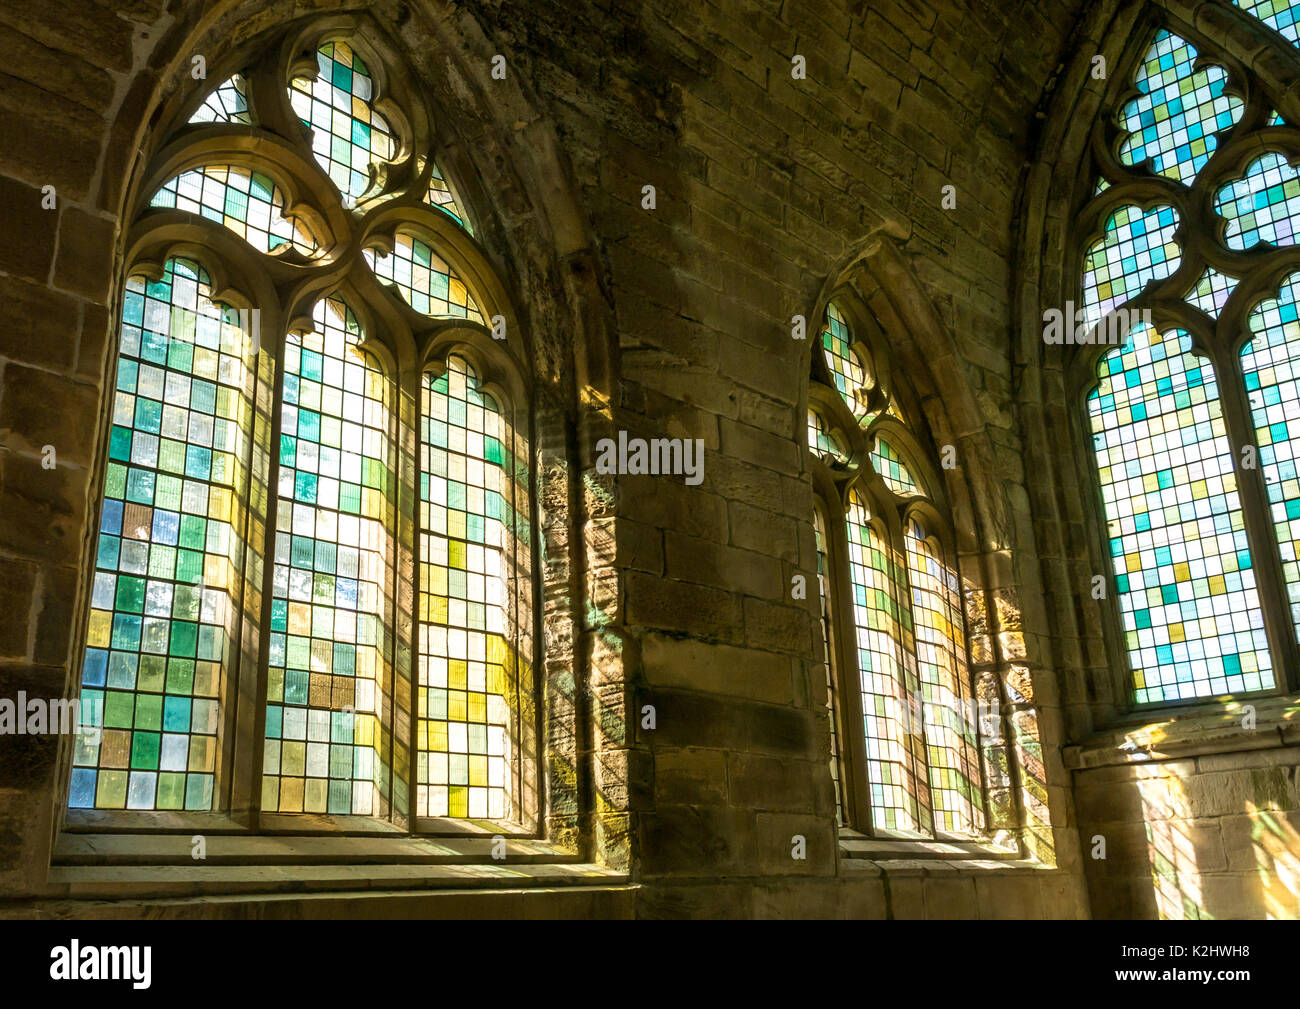 Luce colorata attraverso i vetri in arcate ornate di vetrate, medievale Seton Chiesa Collegiata, East Lothian in Scozia, Regno Unito Foto Stock